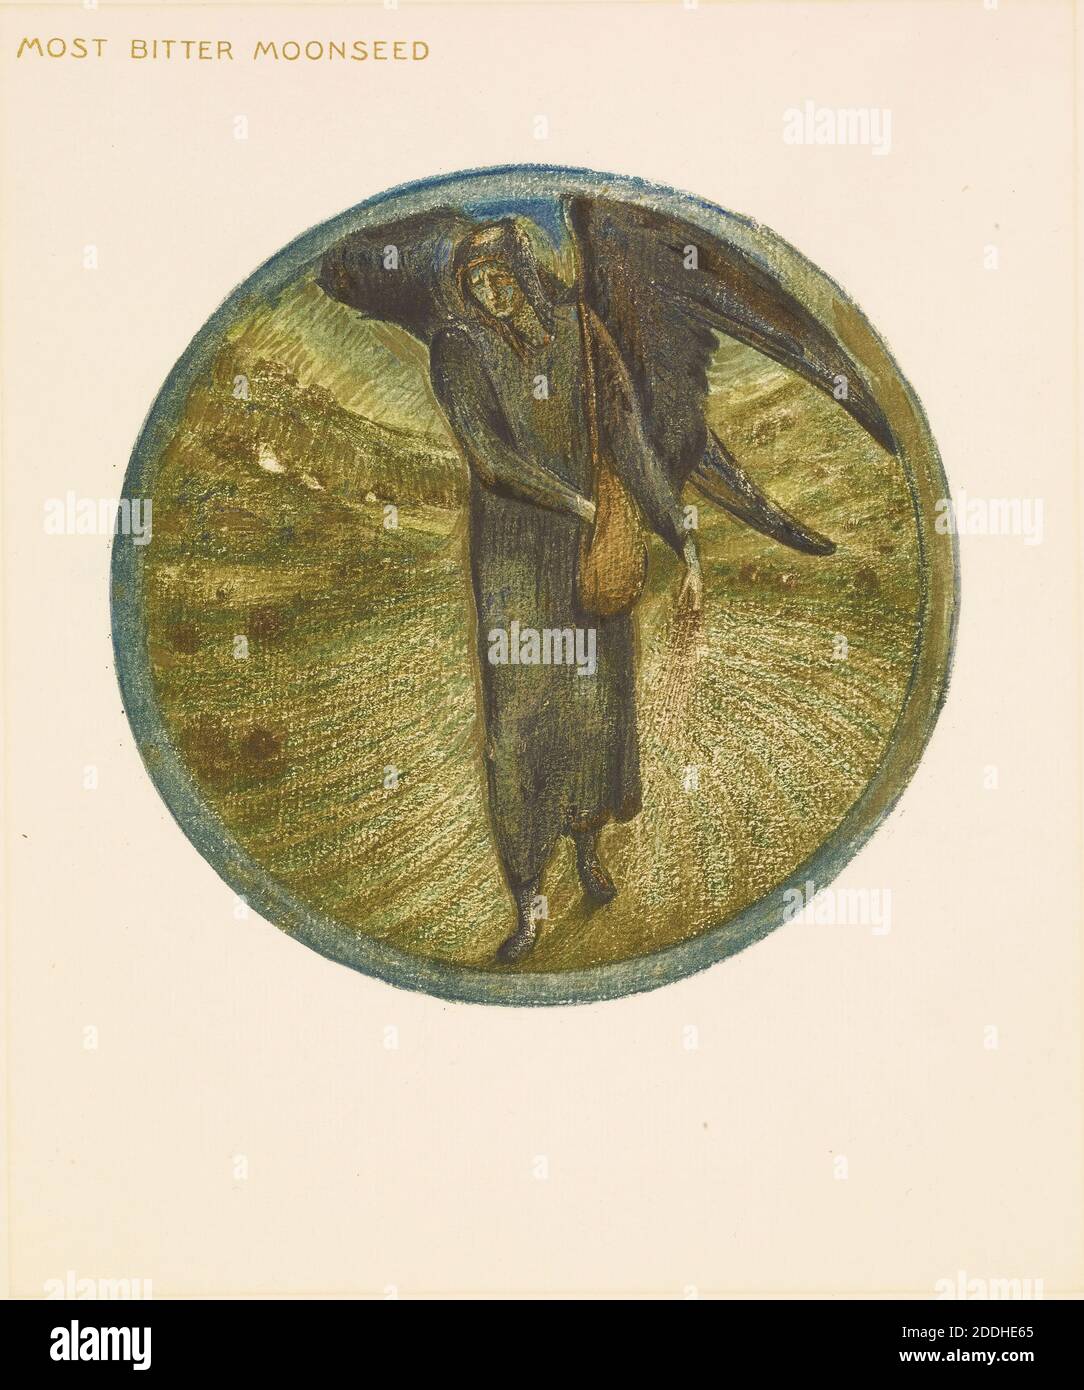 El libro de las flores, la semilla de la luna más amarga del libro de las flores, 1905 Sir Edward Burne-Jones, libro, movimiento del arte, pre-Raphaelite, flor, ángel, impresión, cotipo, planta Foto de stock